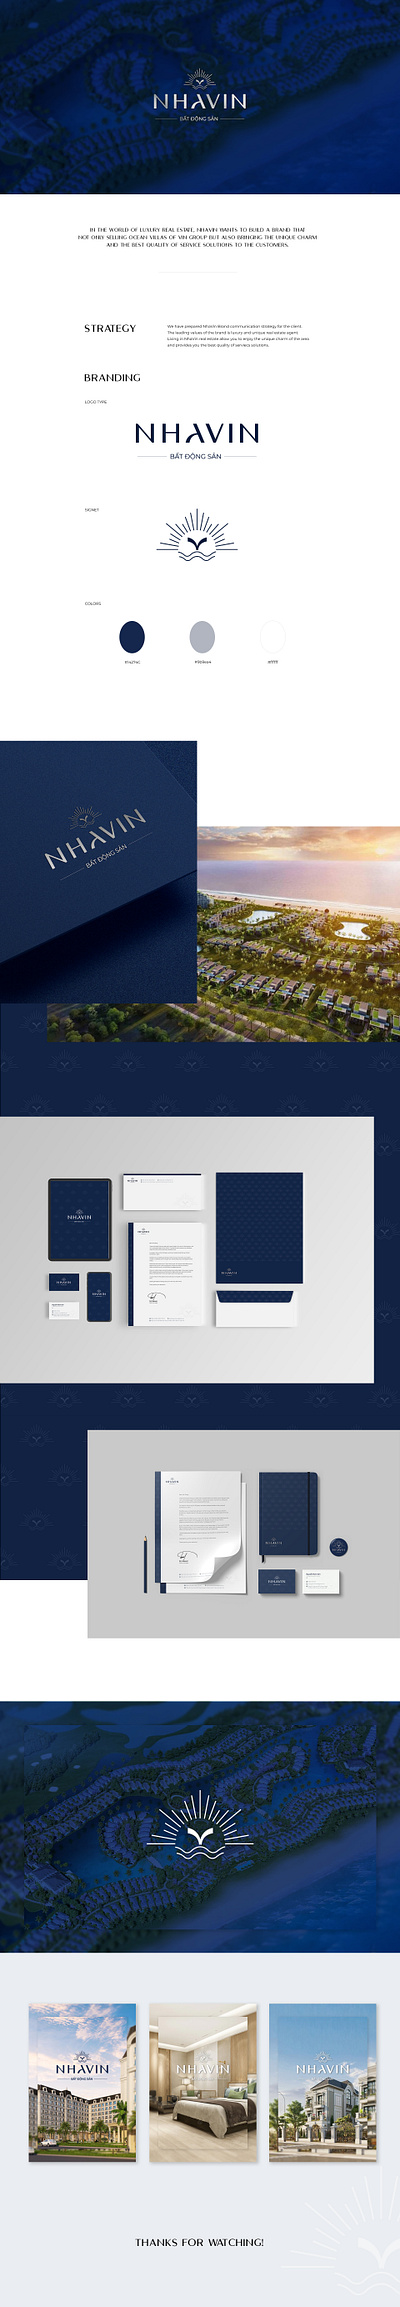 NHAVIN - Luxury Real Estate Branding Design branding graphic design logo luxury realestate